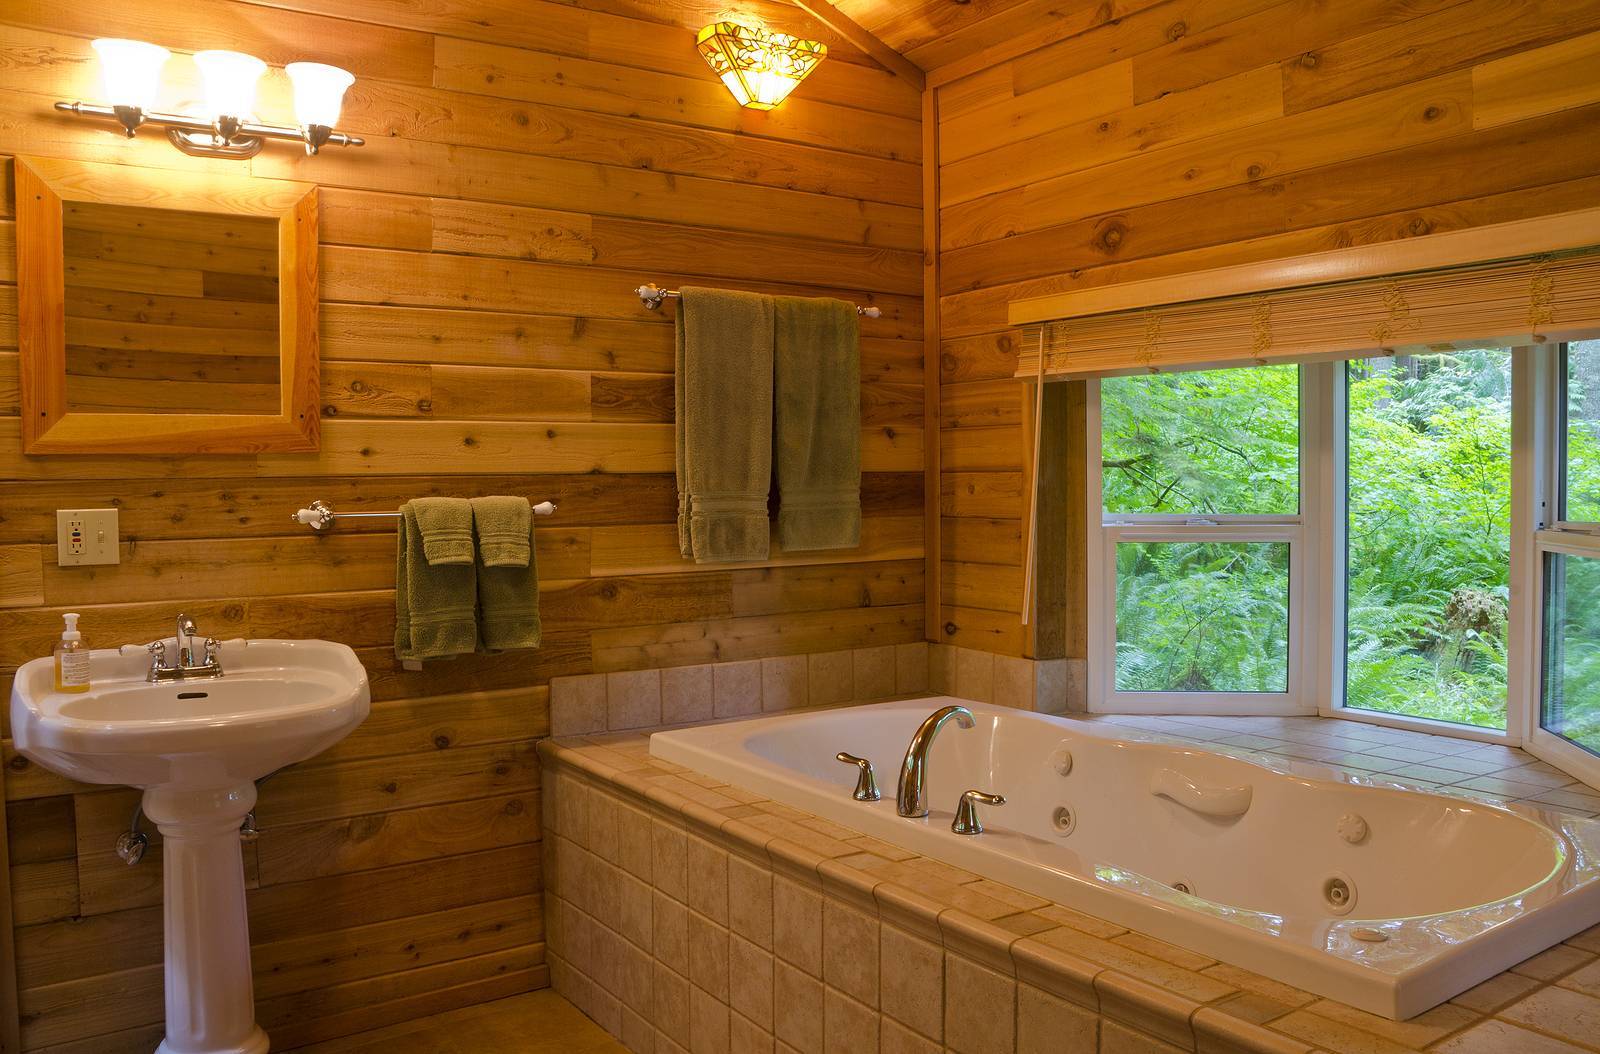 Как сделать ванную в каркасном доме своими руками: правила и пошаговая инструкция +видео — гидроизоляция пола и отделка стен